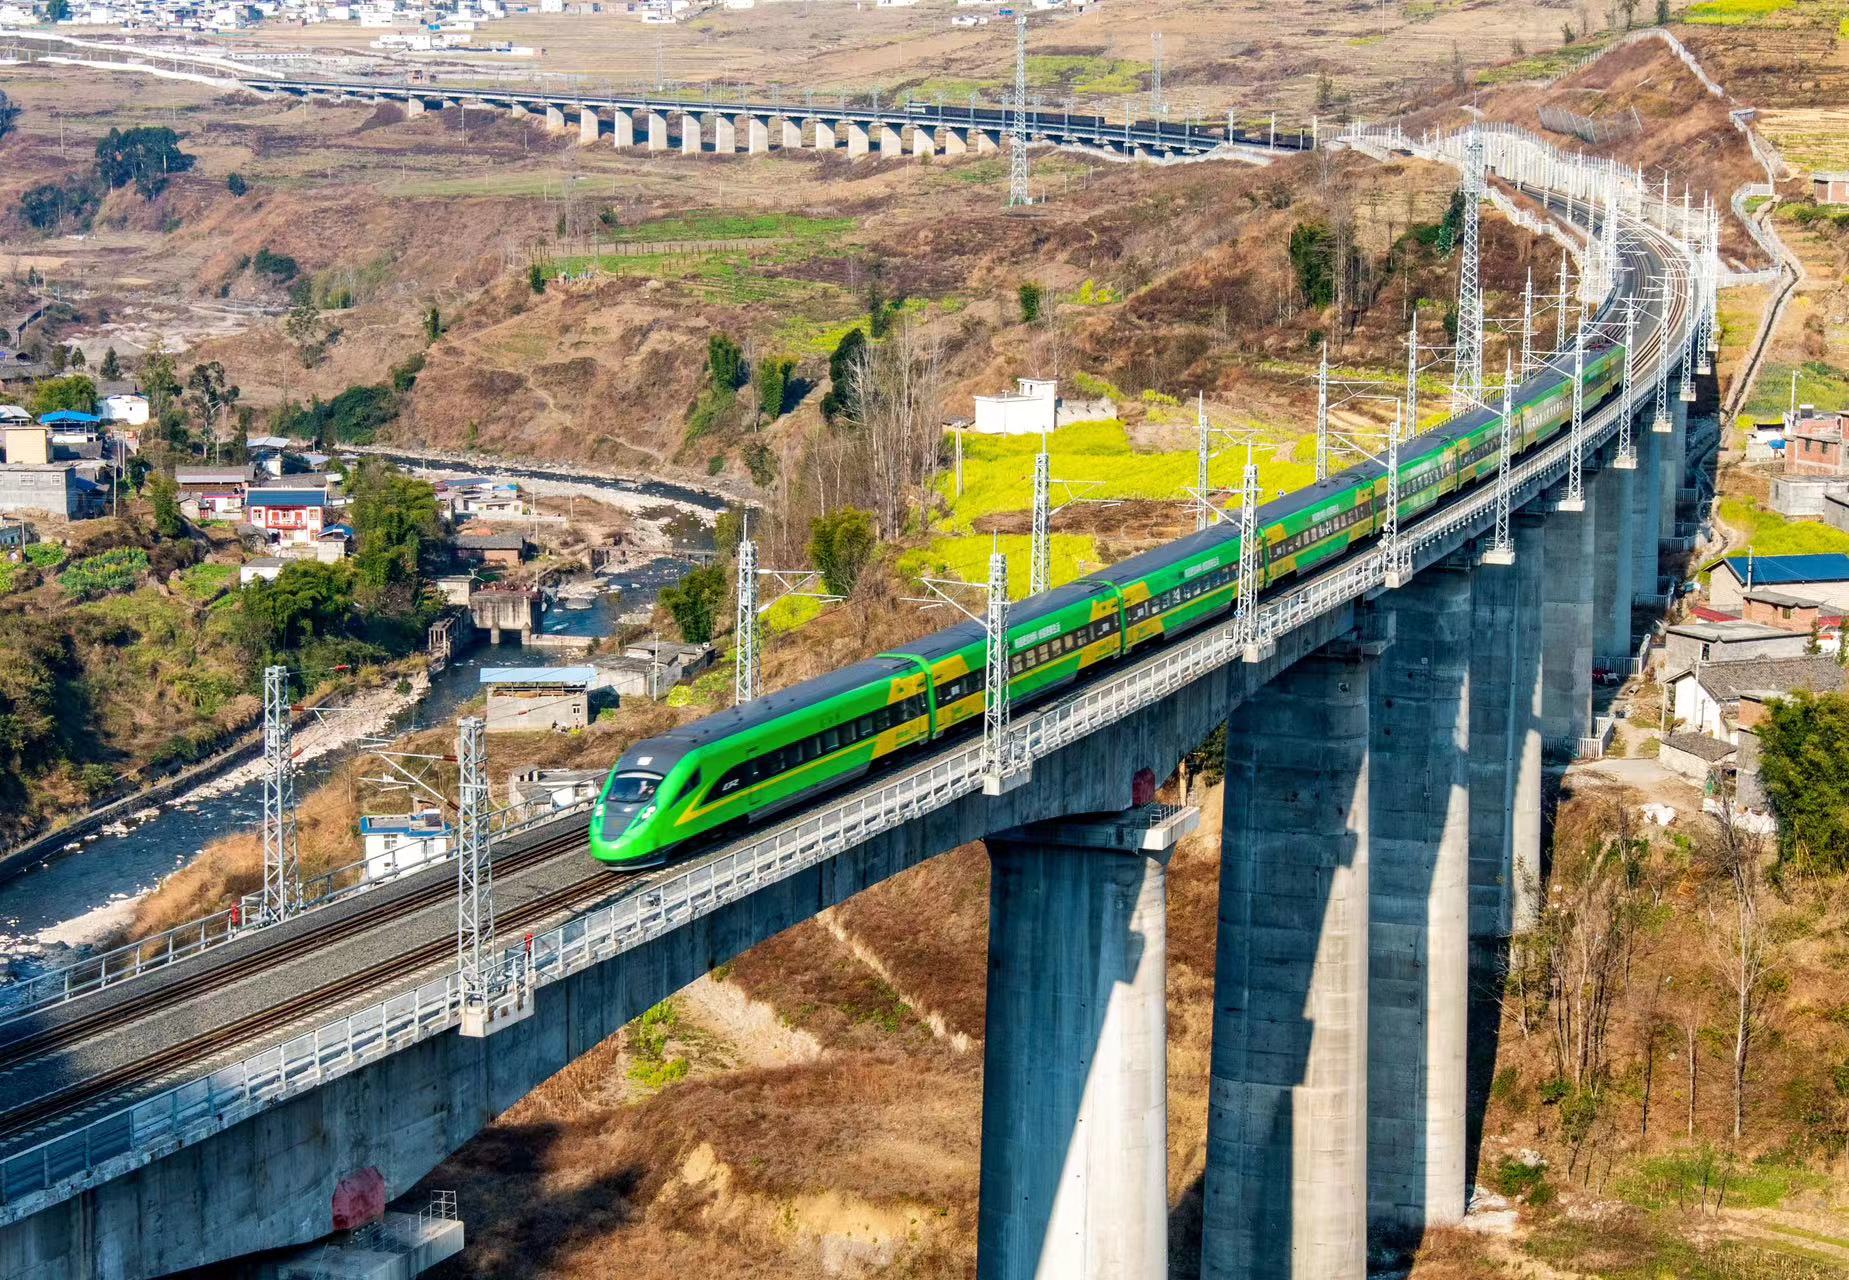 新成昆铁路运营一周年 累计发送旅客超2000万人次